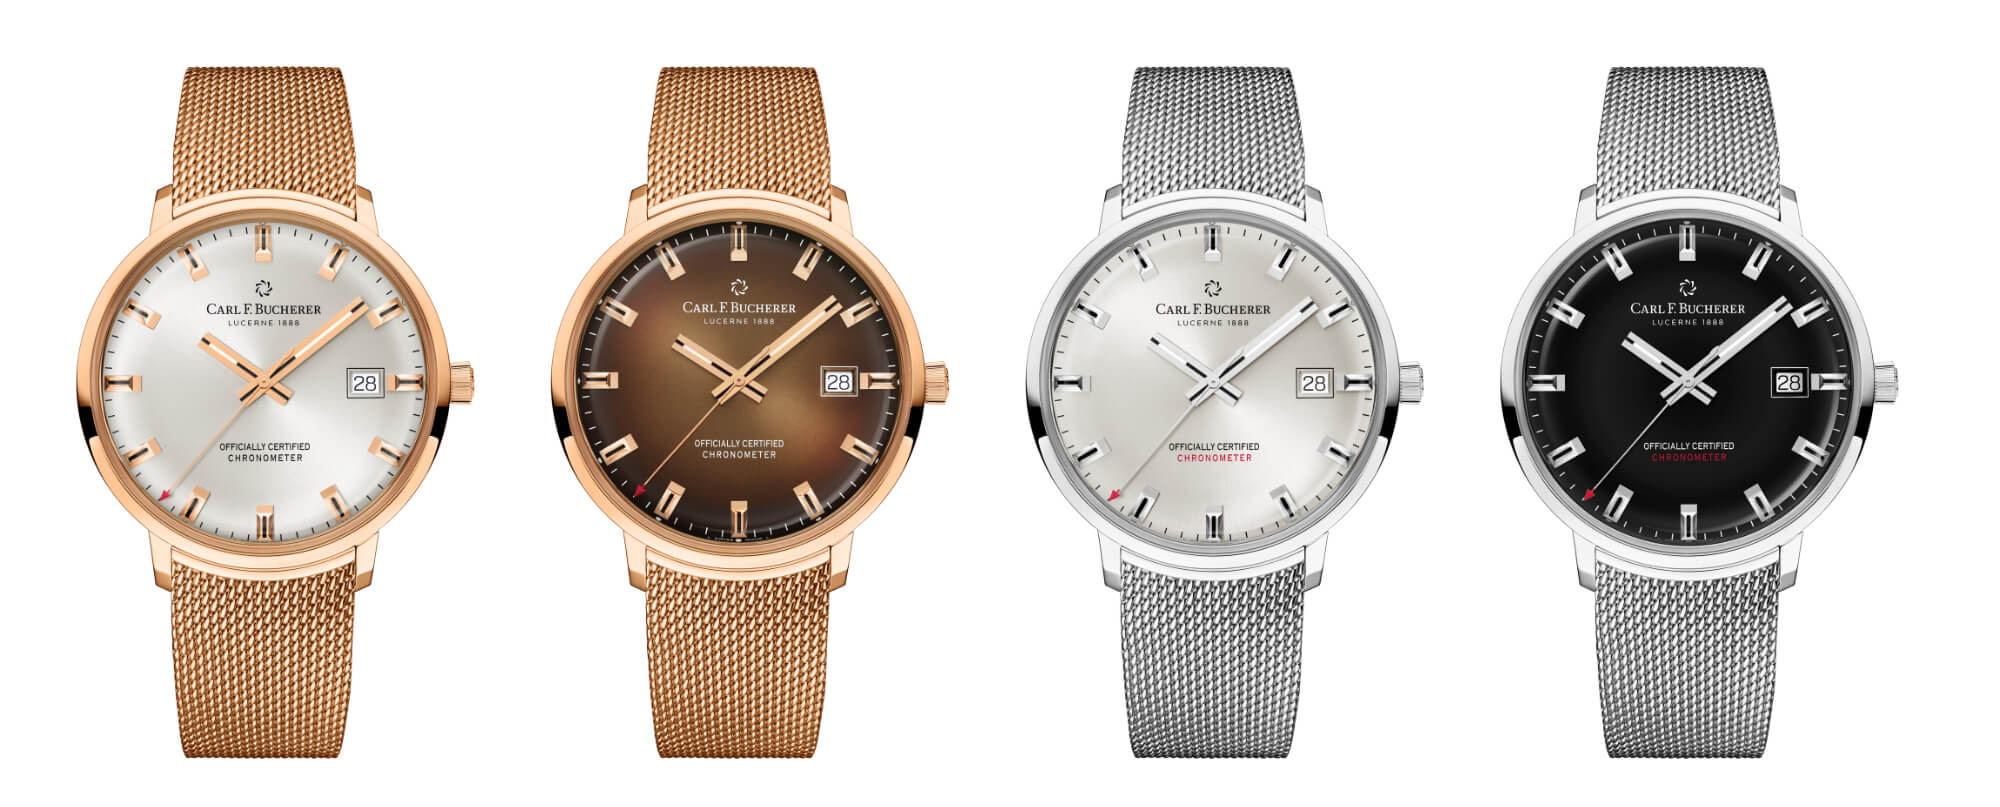 宝齐莱推出传承系列四款限量版手表如何-为庆祝品牌成立135周年